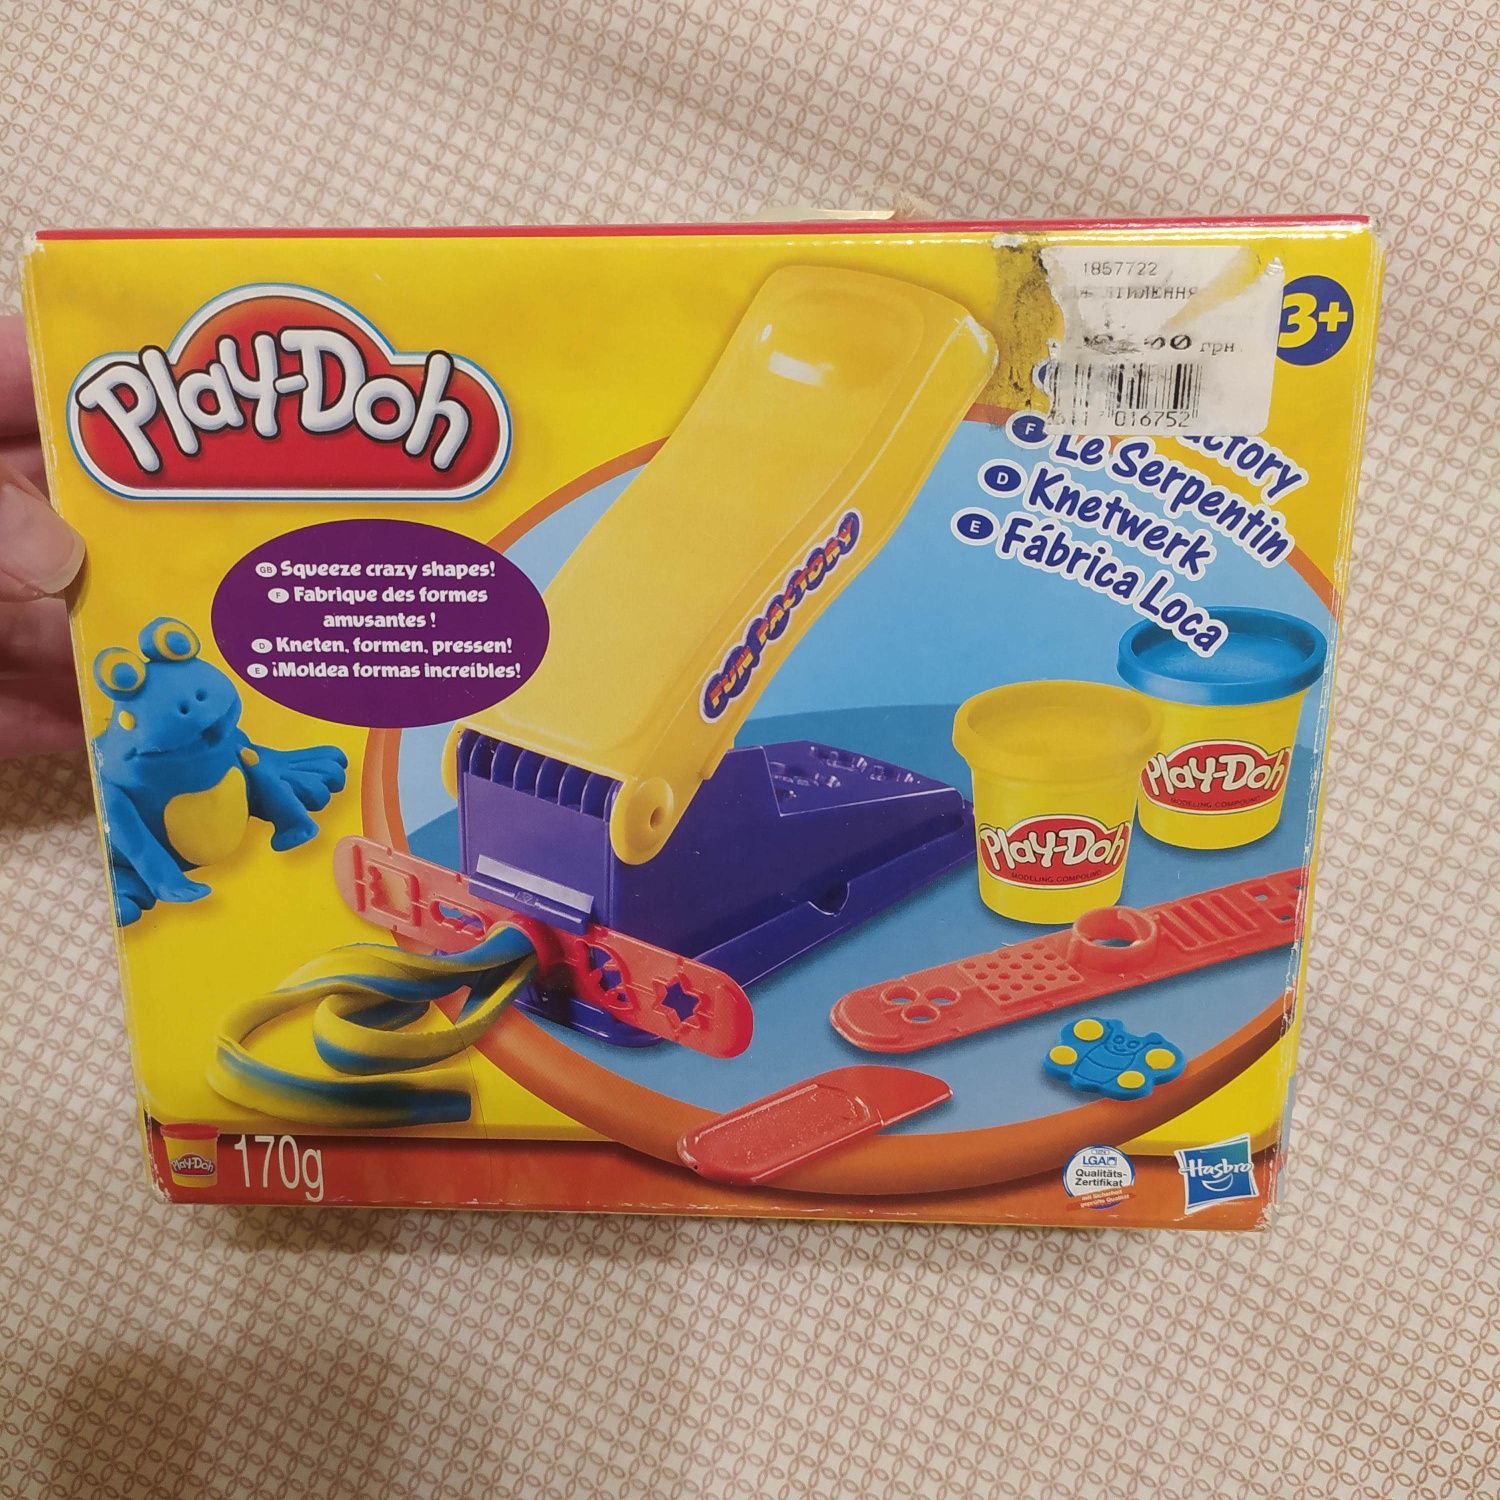 Игровой набор Play-doh веселая фабрика. Формочки. Домино Vladi Влади.